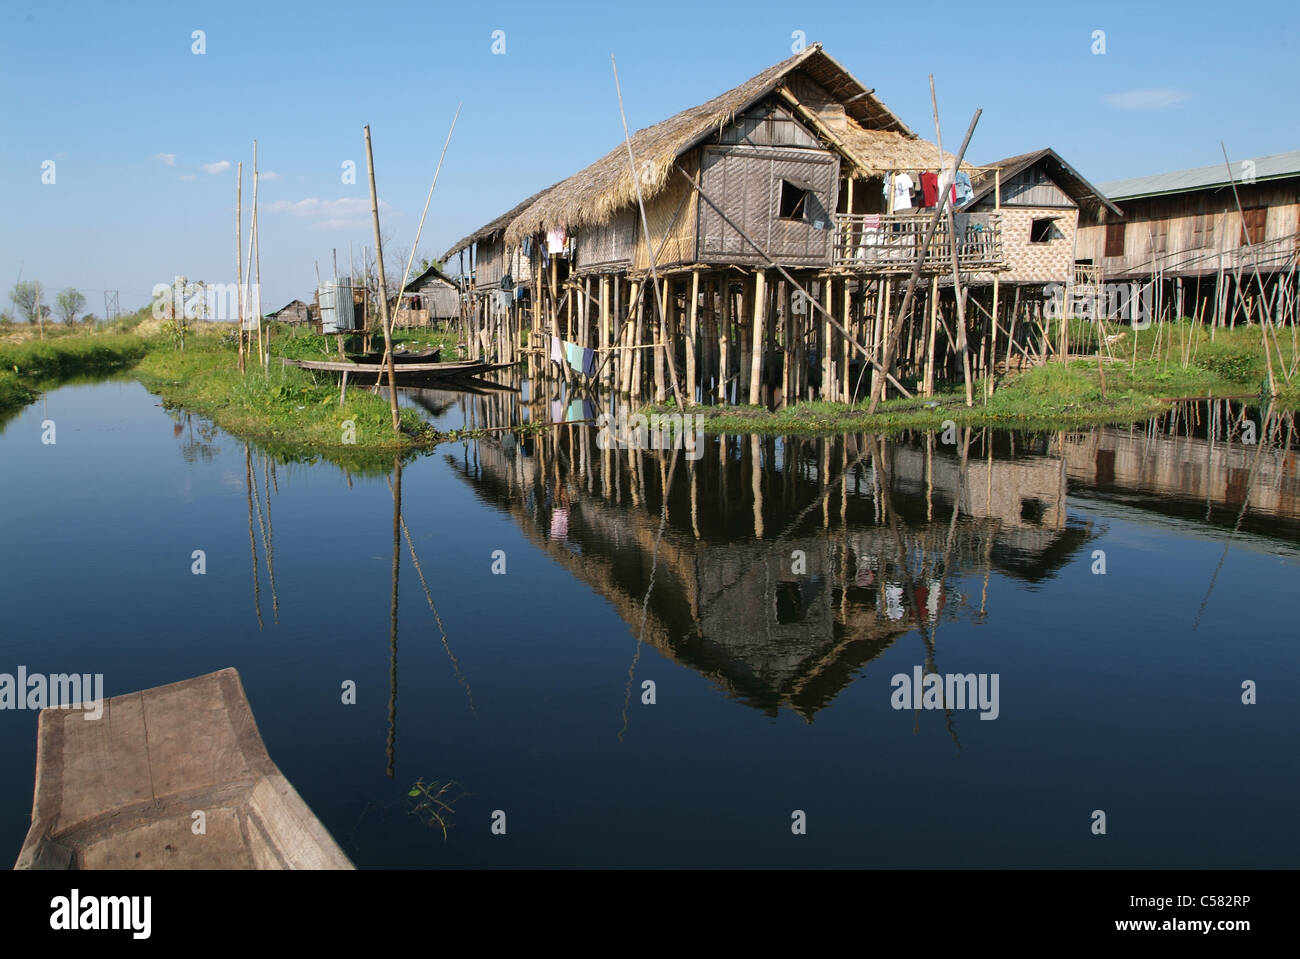 L'Asie, Birmanie, Myanmar, le lac Inle, Haspres Thauk, posts, canoe, cabane, de l'eau Banque D'Images